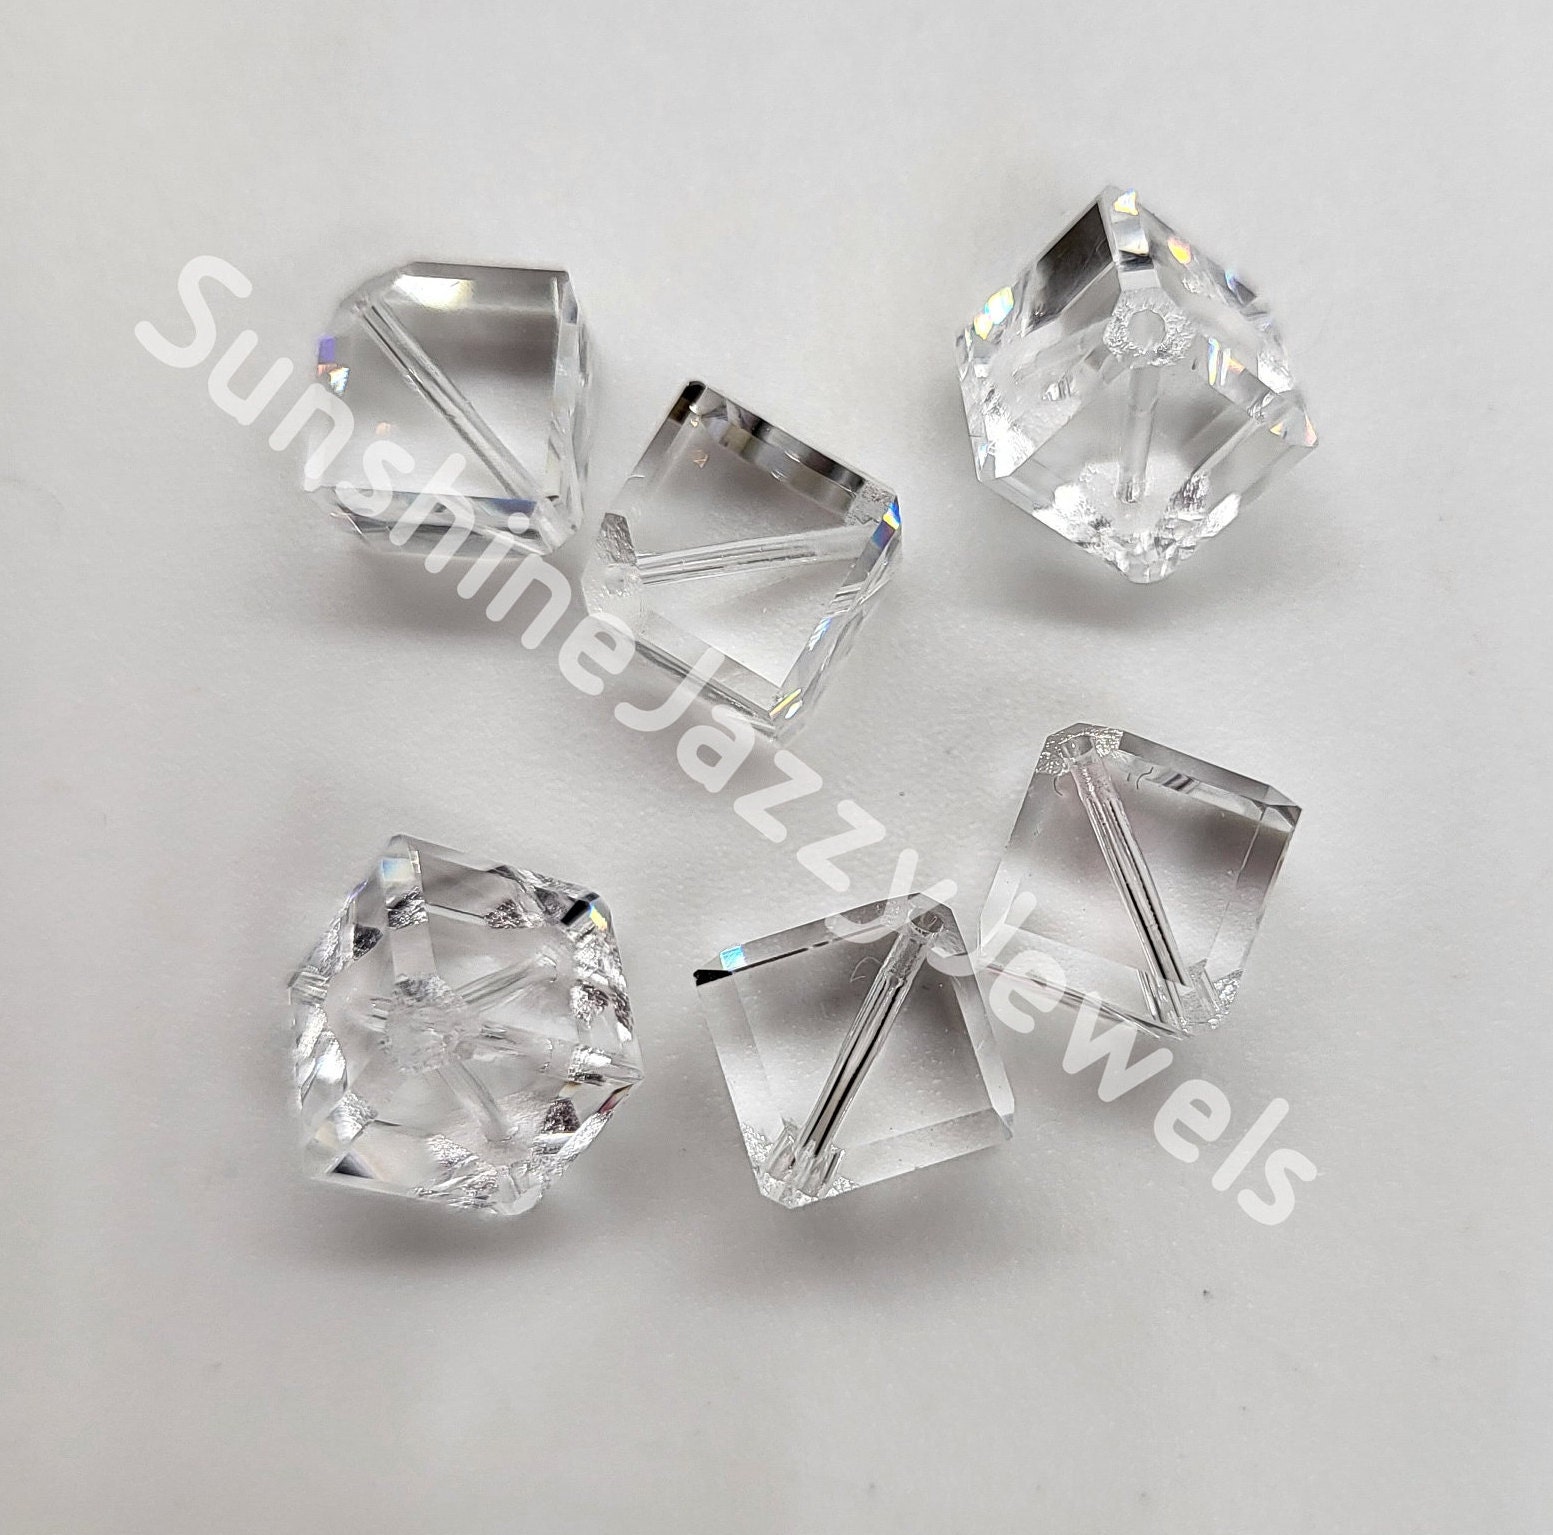 SWAROVSKI 5600 Diagonal Hole Crystal AB | 6mm | 1 Piece